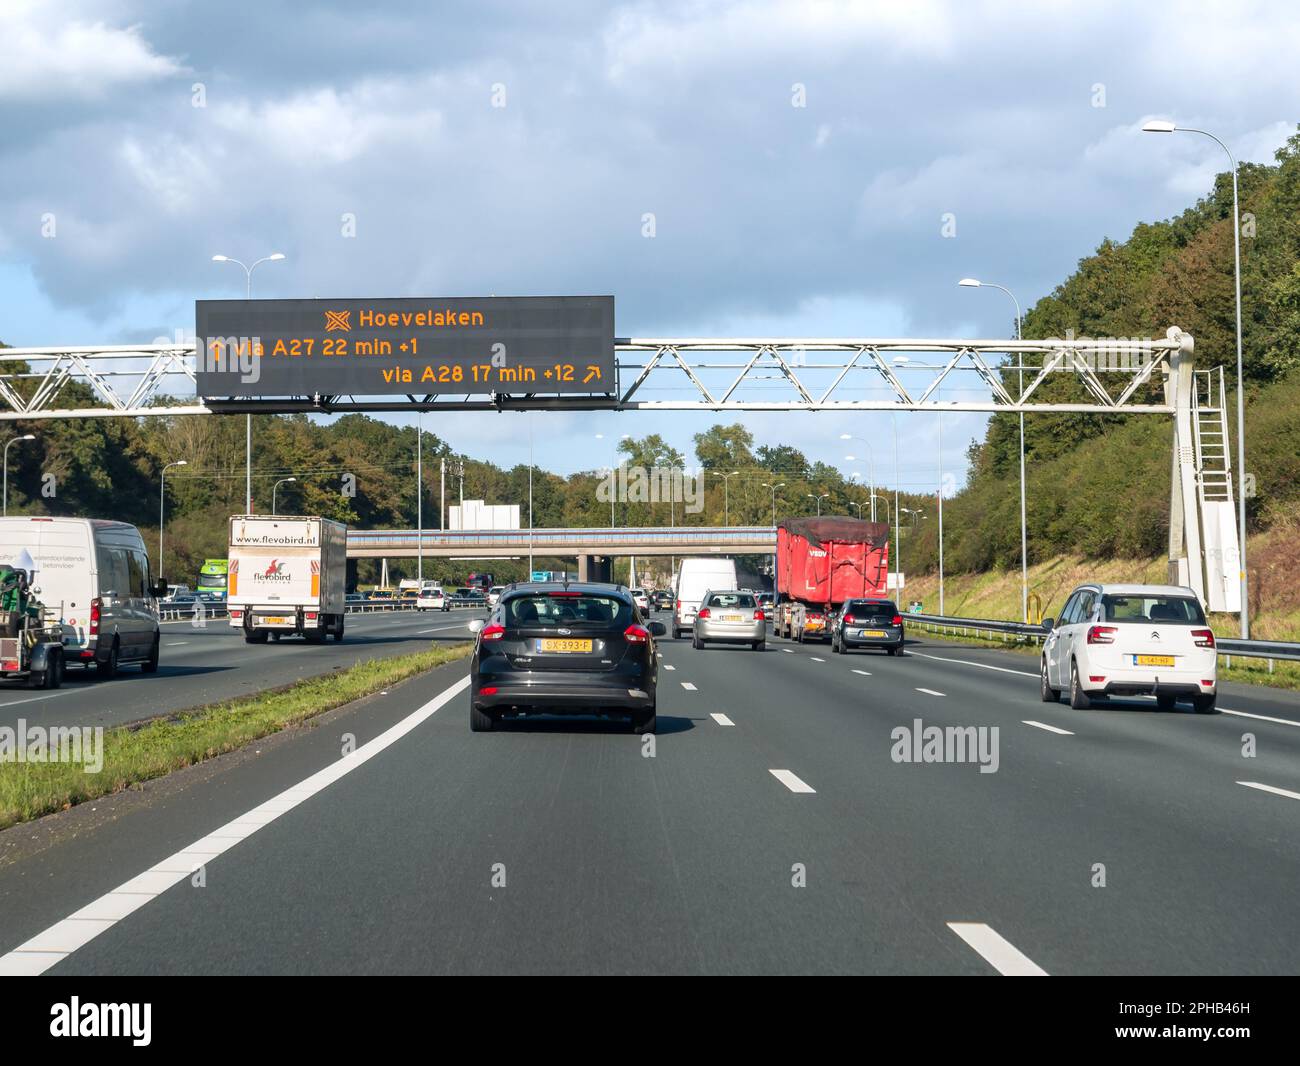 Verkehrs- und Overhead-Gantry mit elektronischen Informationen zur Fahrzeit, Autobahn A27 zwischen Utrecht und Hilversum, Niederlande Stockfoto